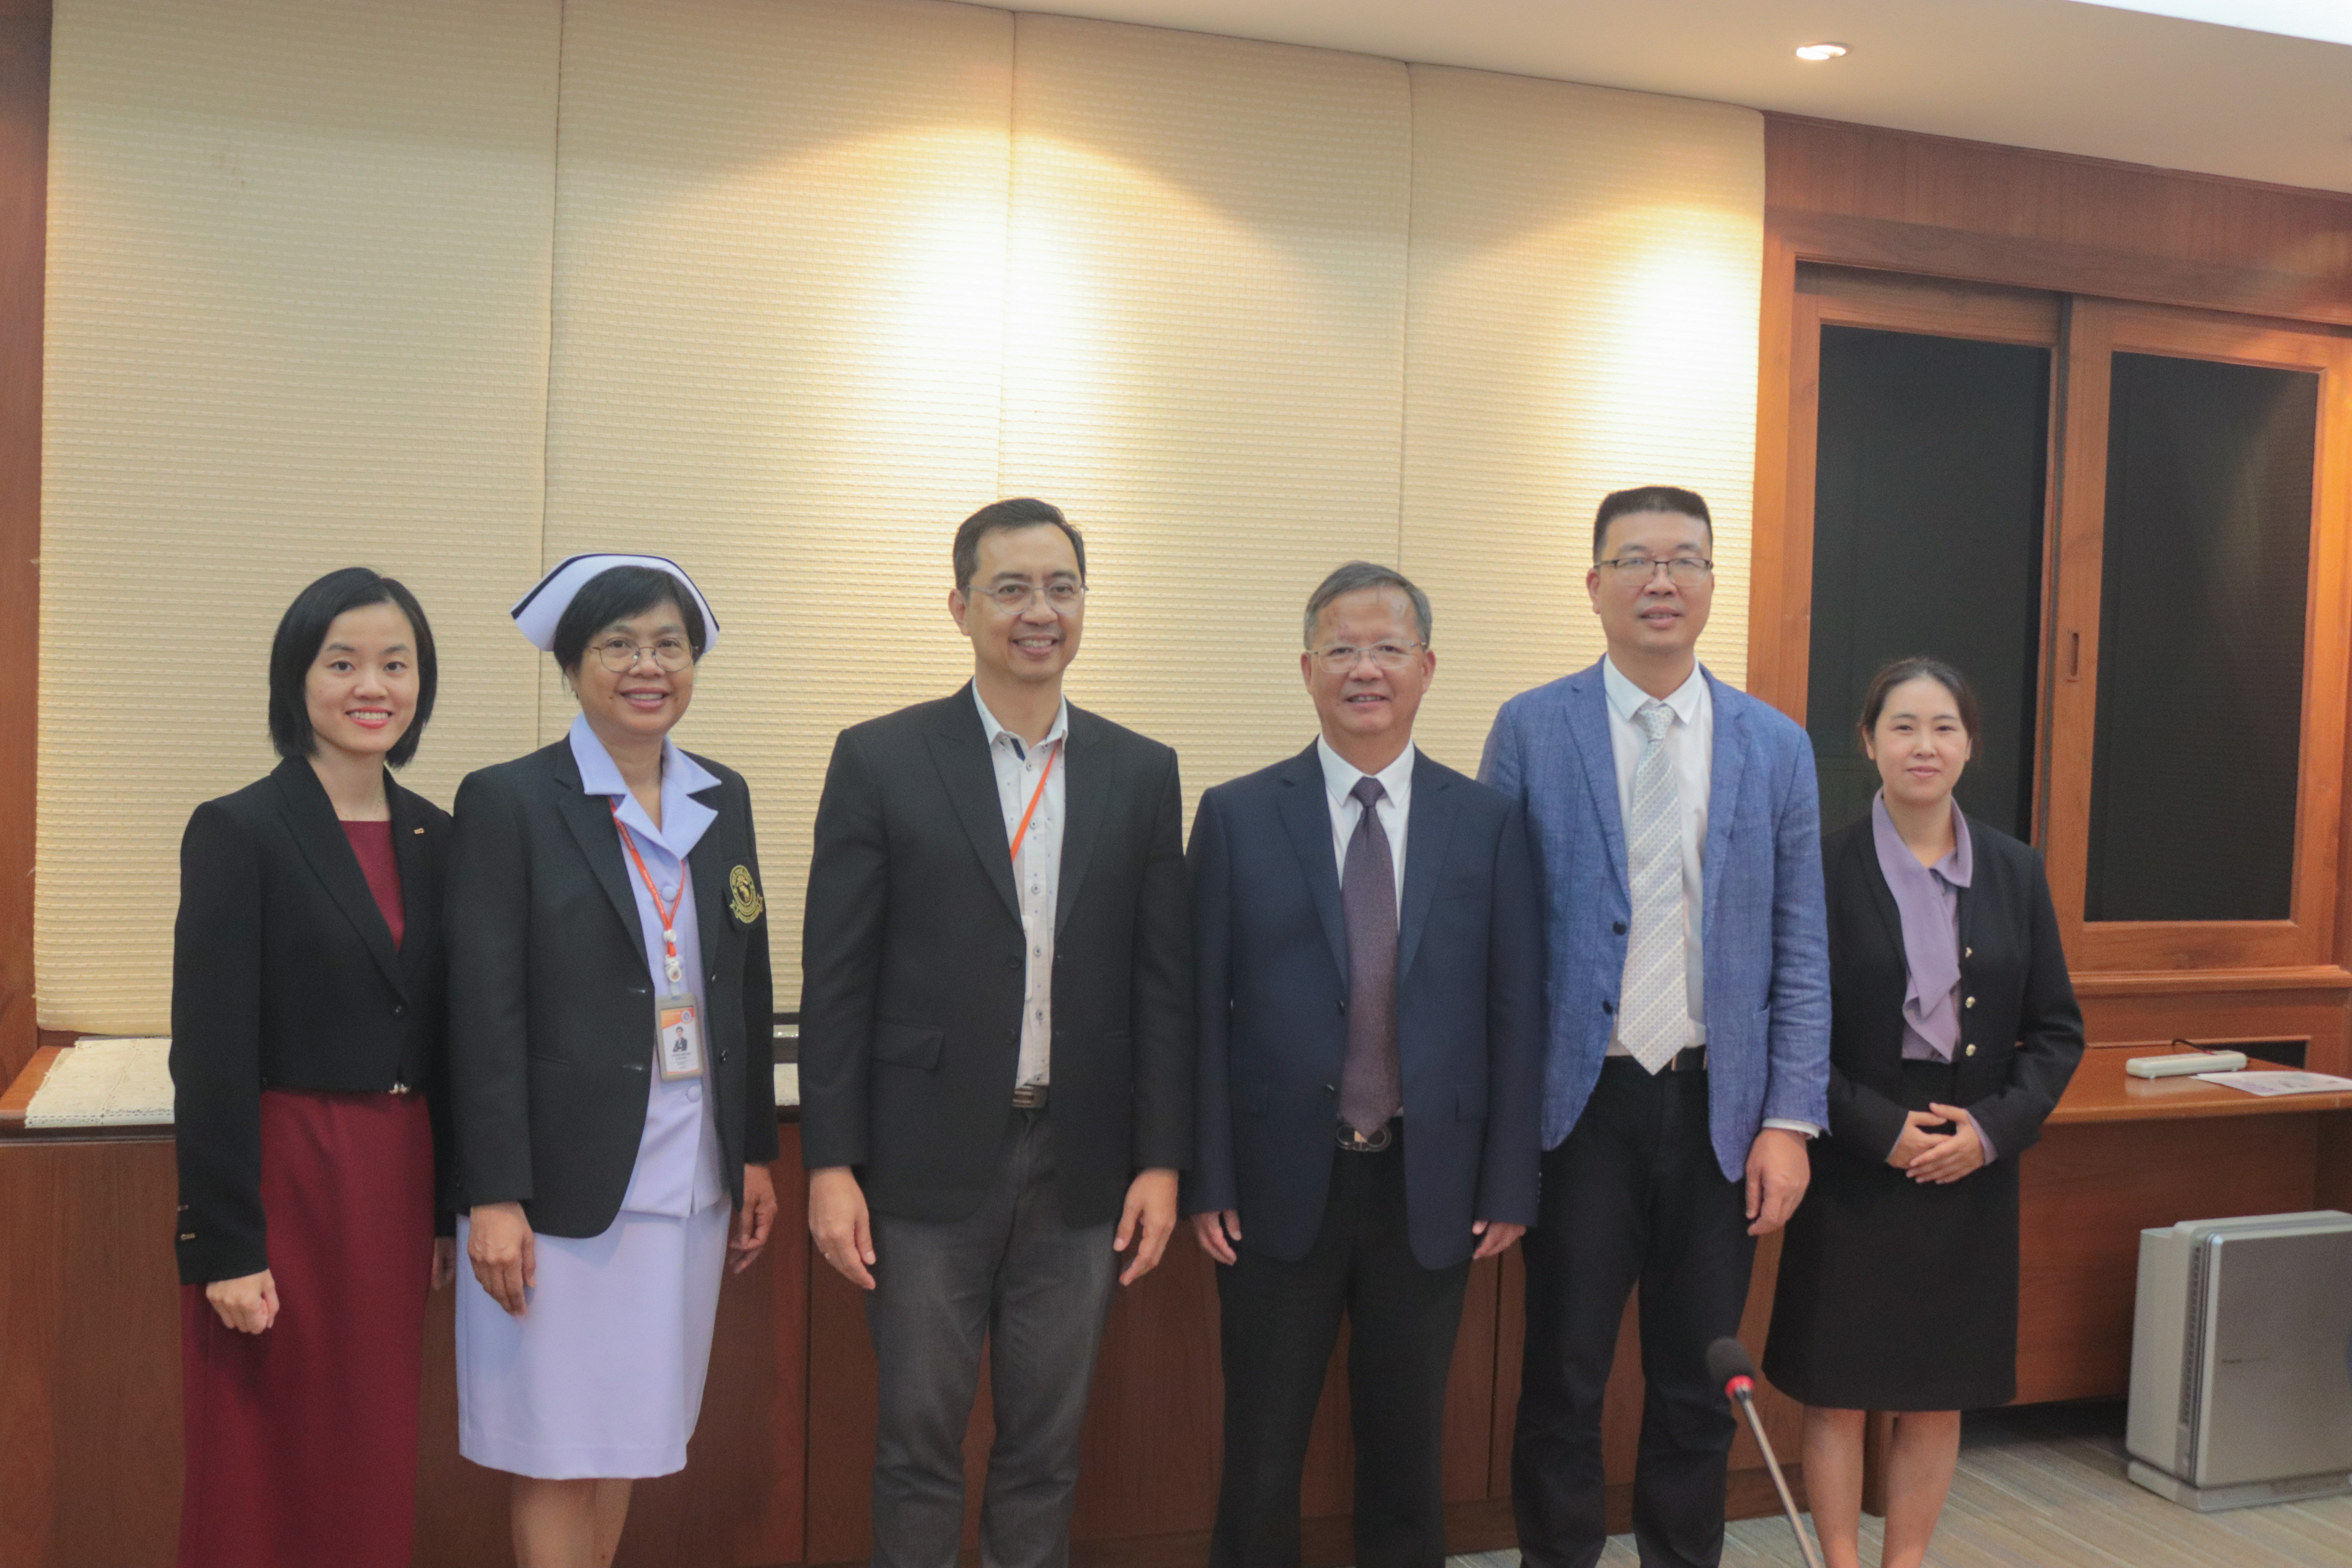 
	ให้การต้อนรับและเจรจาความร่วมมือทางวิชาการกับคณะผู้บริหารจาก Wenzhou Medical University สาธารณรัฐประชาชนจีน
